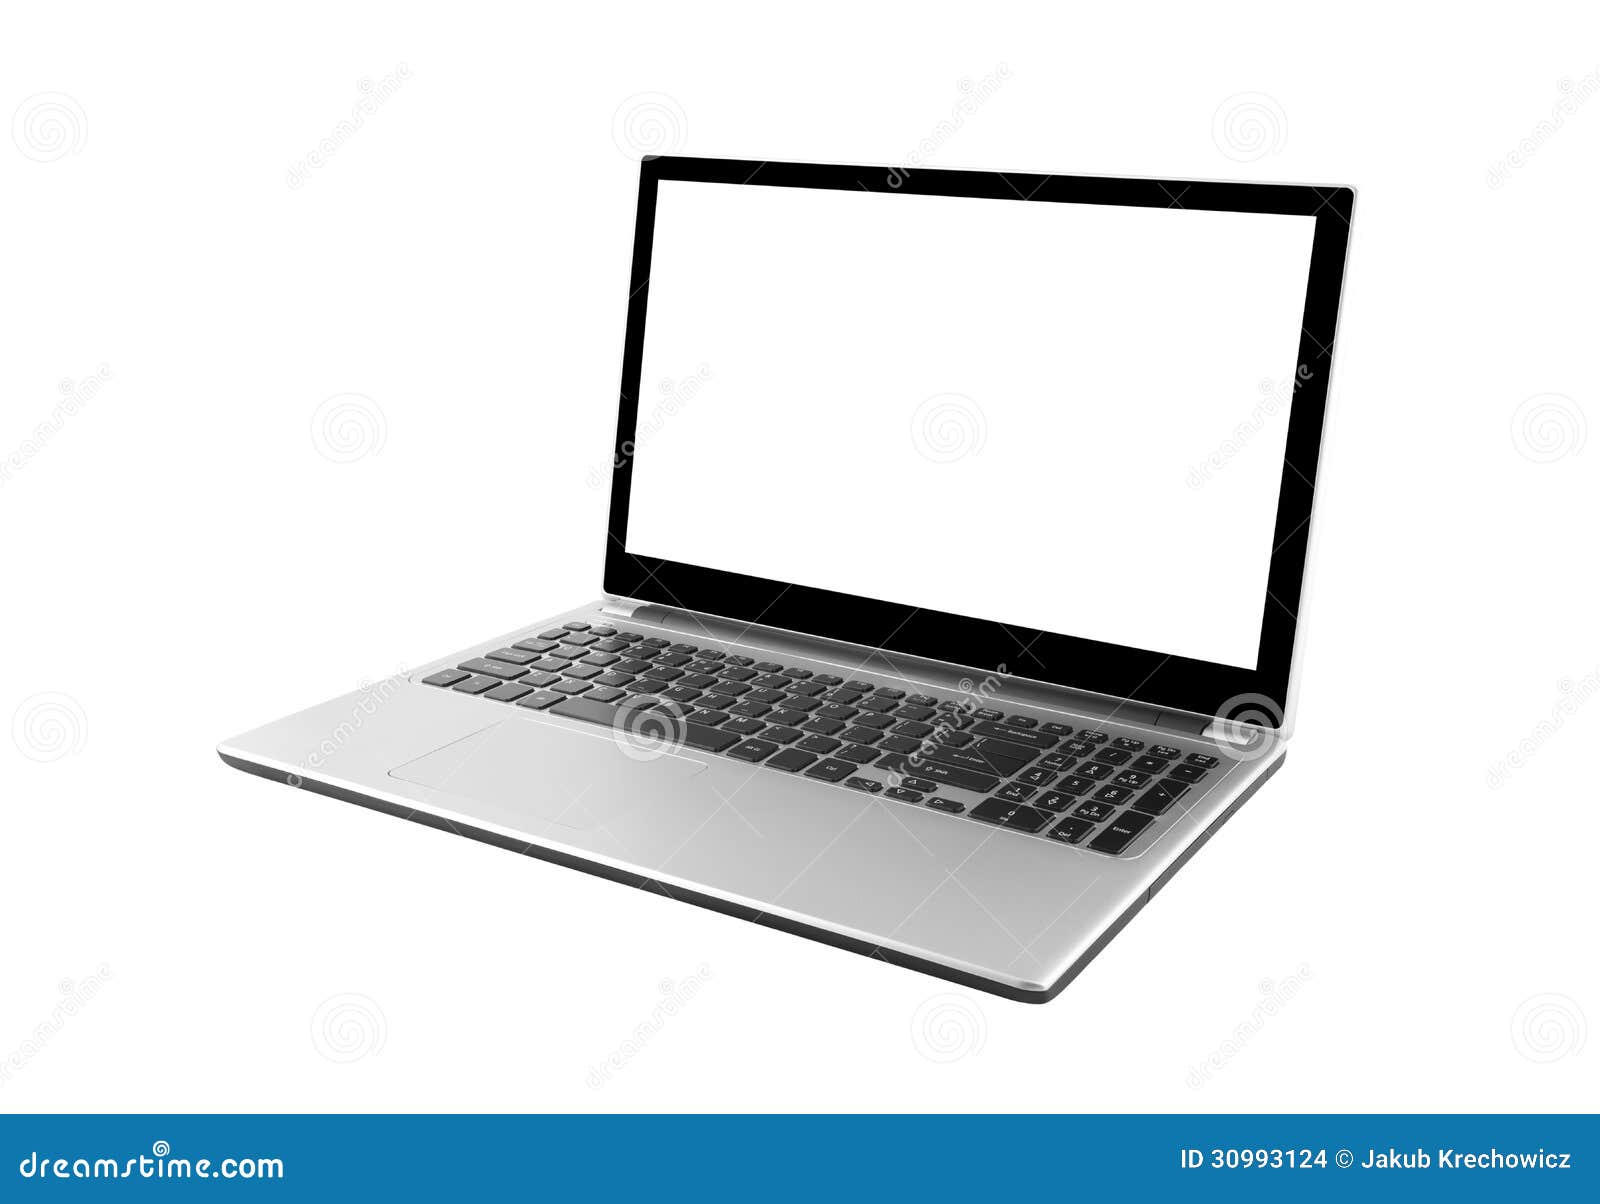 laptop  on white